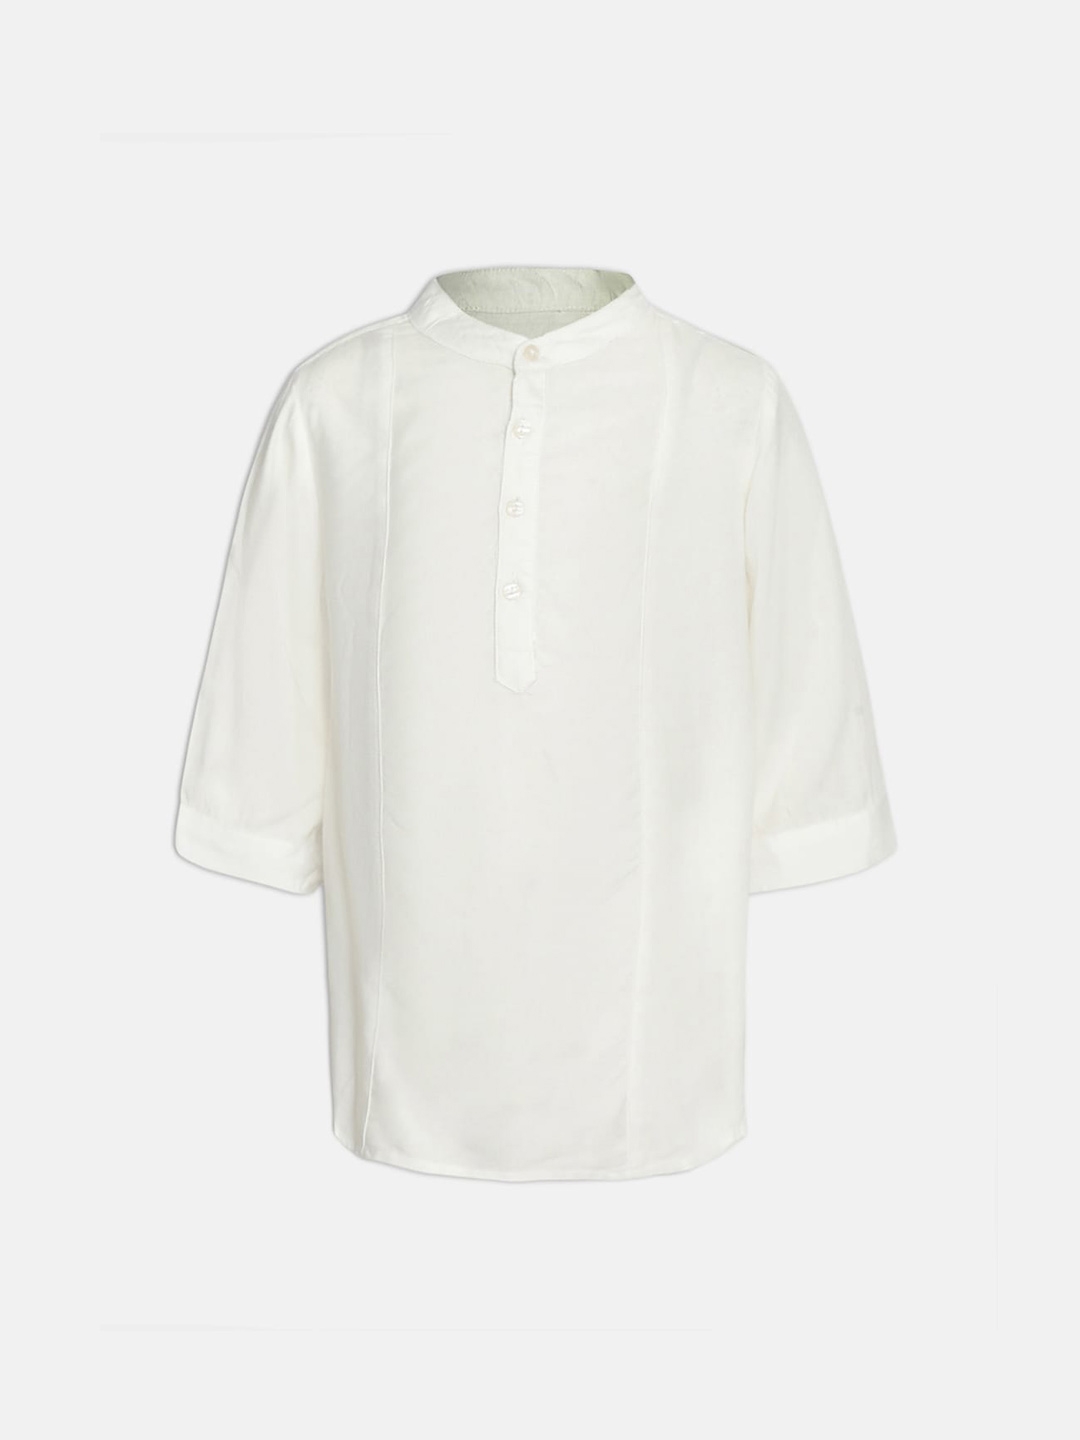 Oxolloxo Boys White Casual Shirt